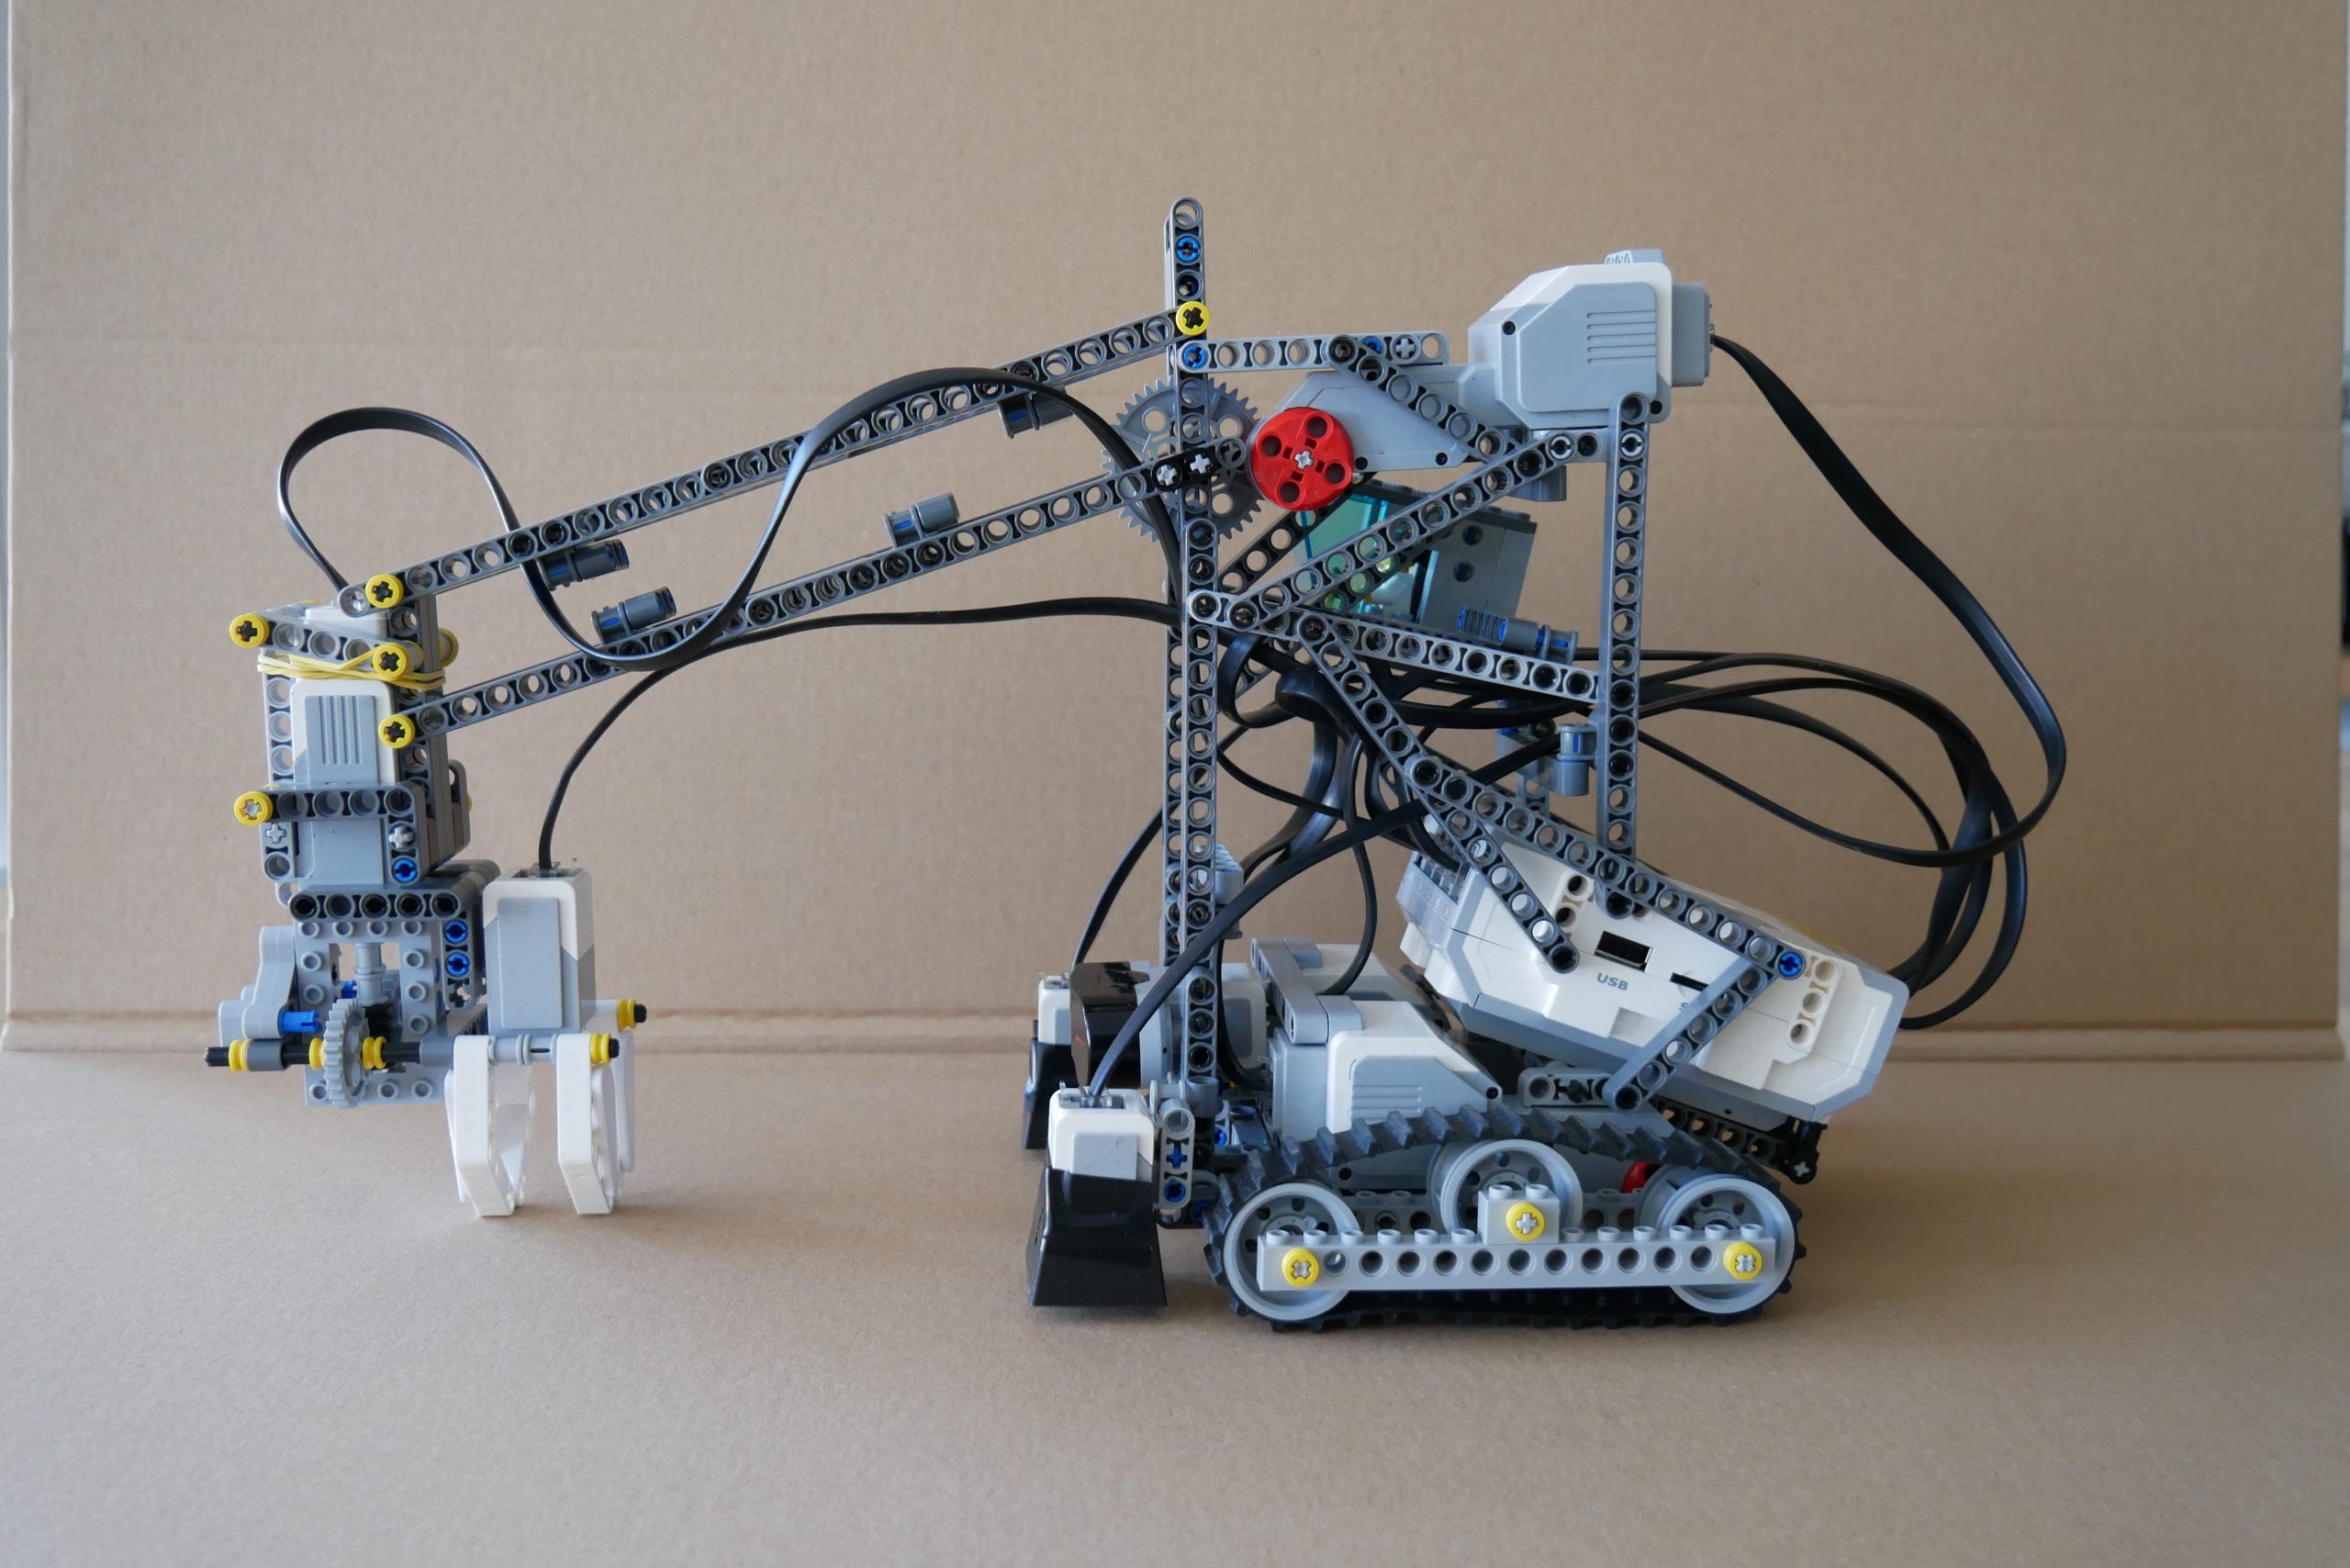 Project 1 – Autonomous robot